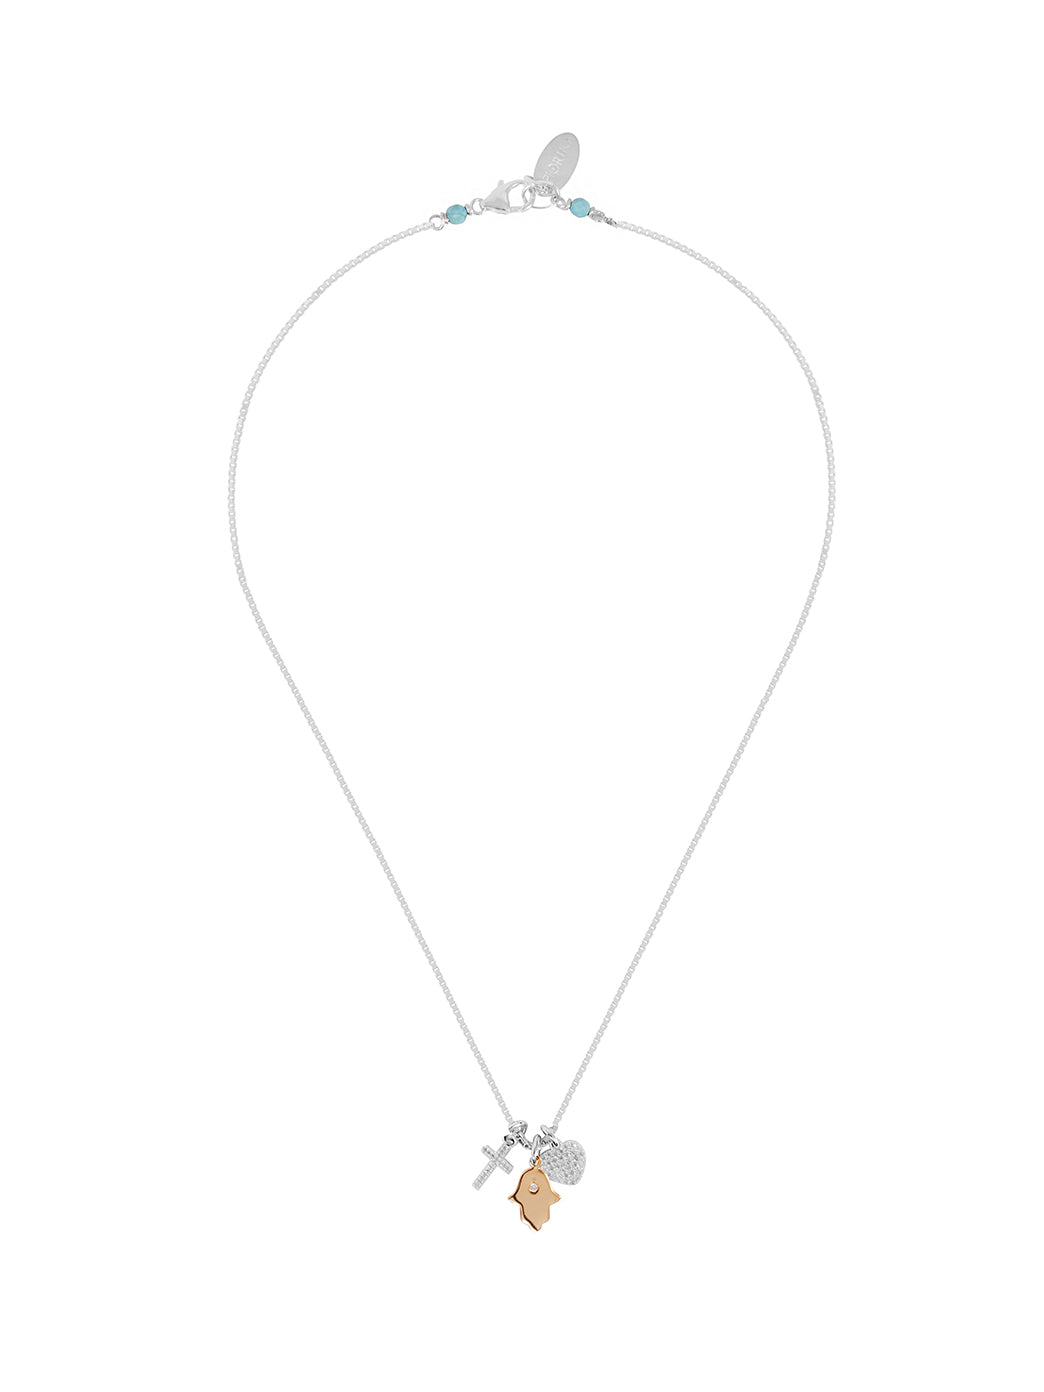 Fiorina Jewellery Mini Charm Necklace Religious